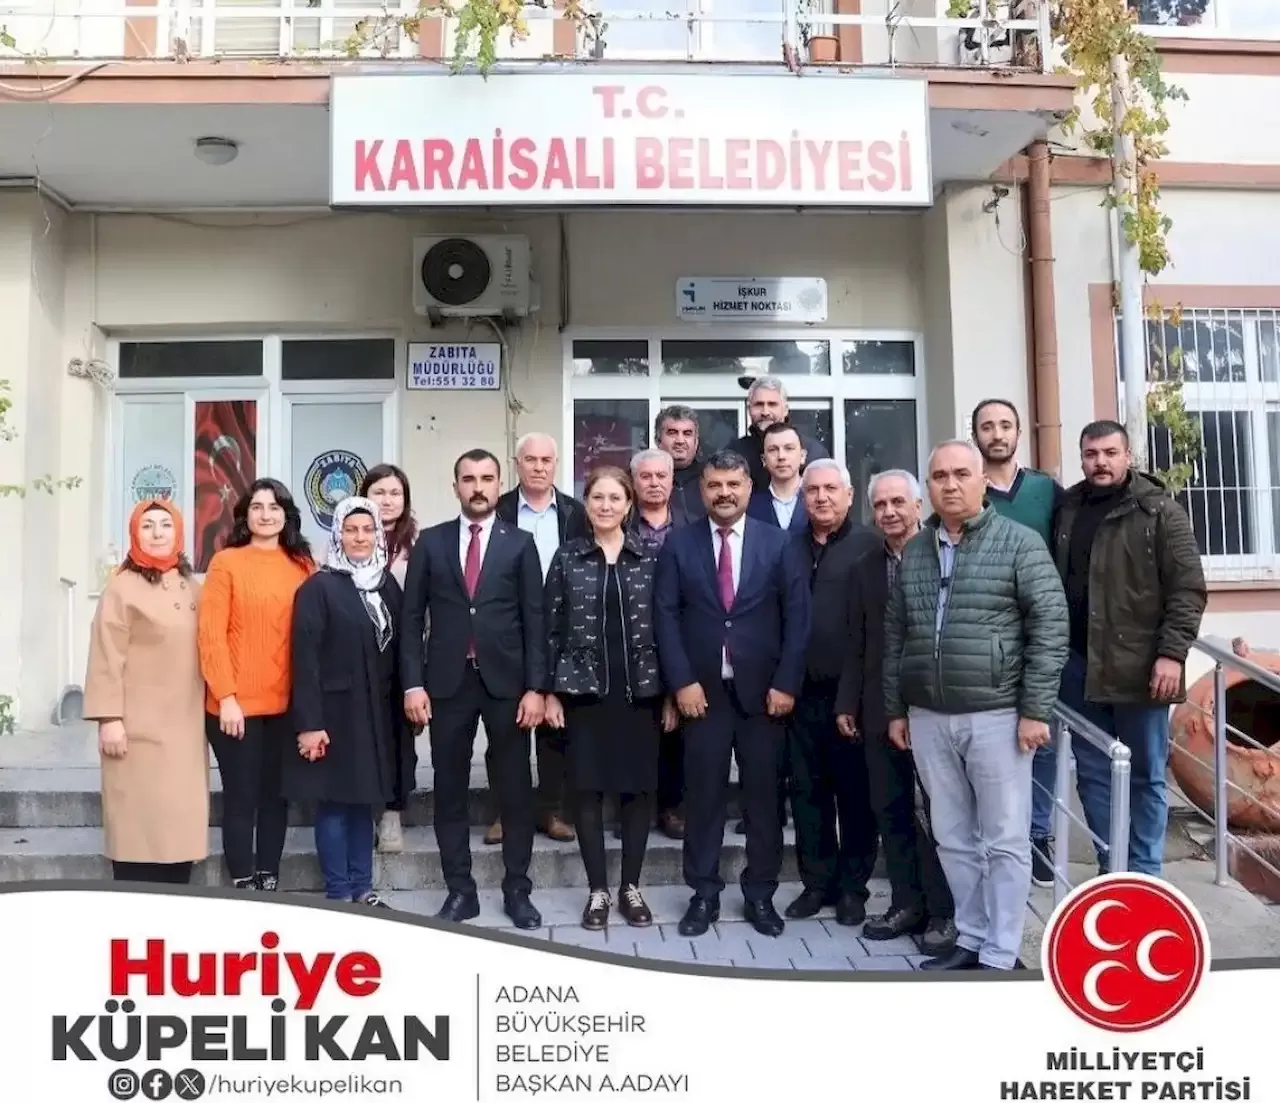 Huriye-Kupeli-Kan-Karaisali-Belediye-Ziyareti.webp